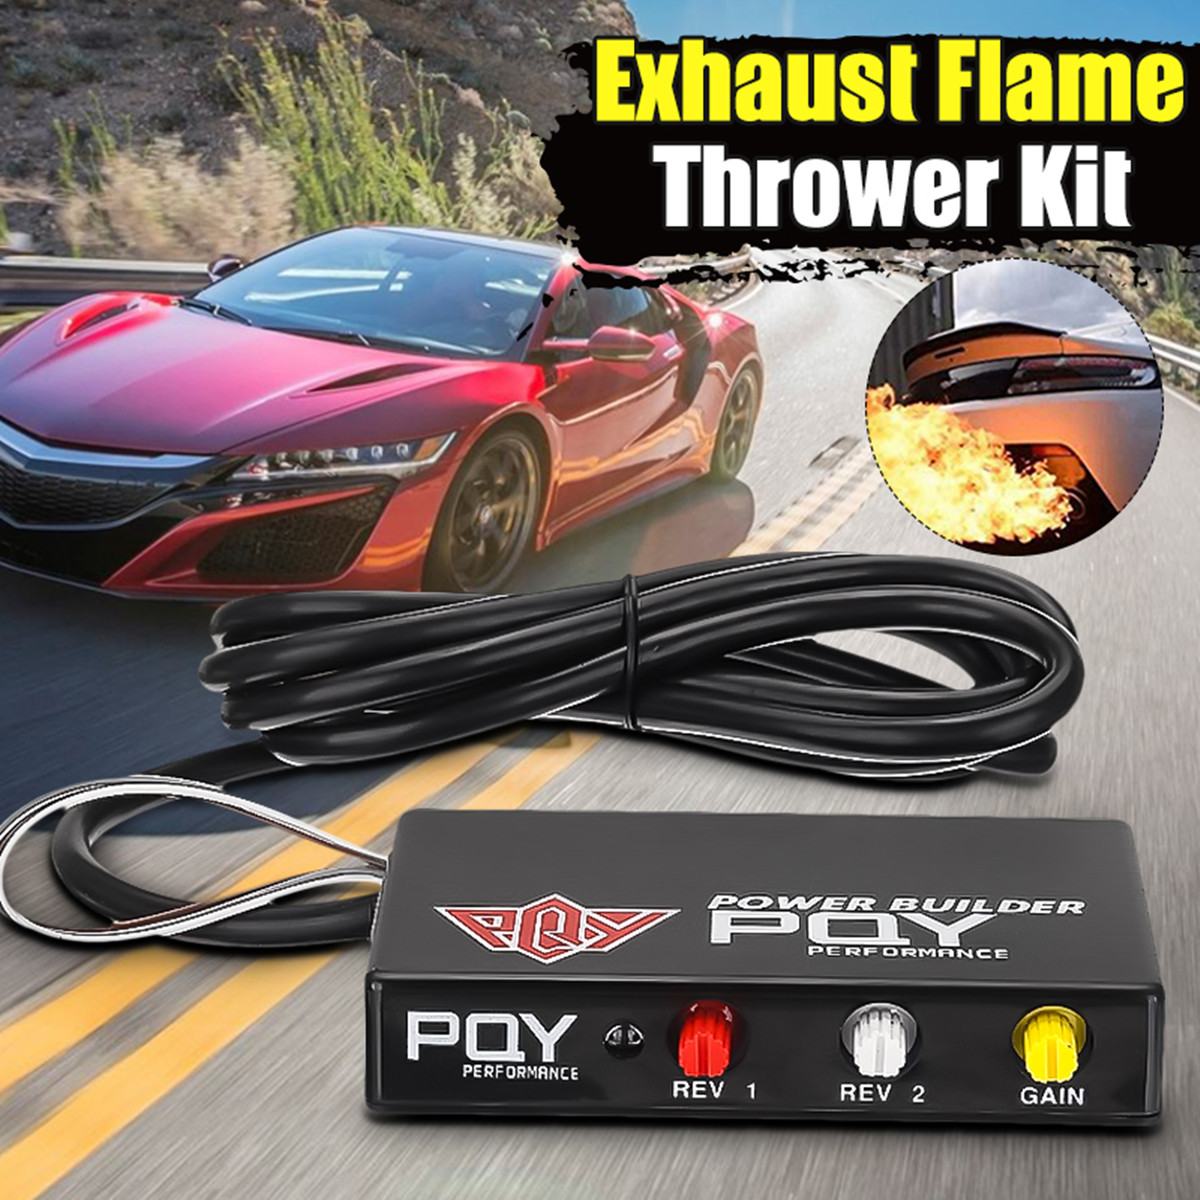 Universele Flame Thrower Voor Uitlaat Motoren Prestaties Limiter Power Builder Uitlaat Flame Thrower Kit Voor Subaru Voor Toyota